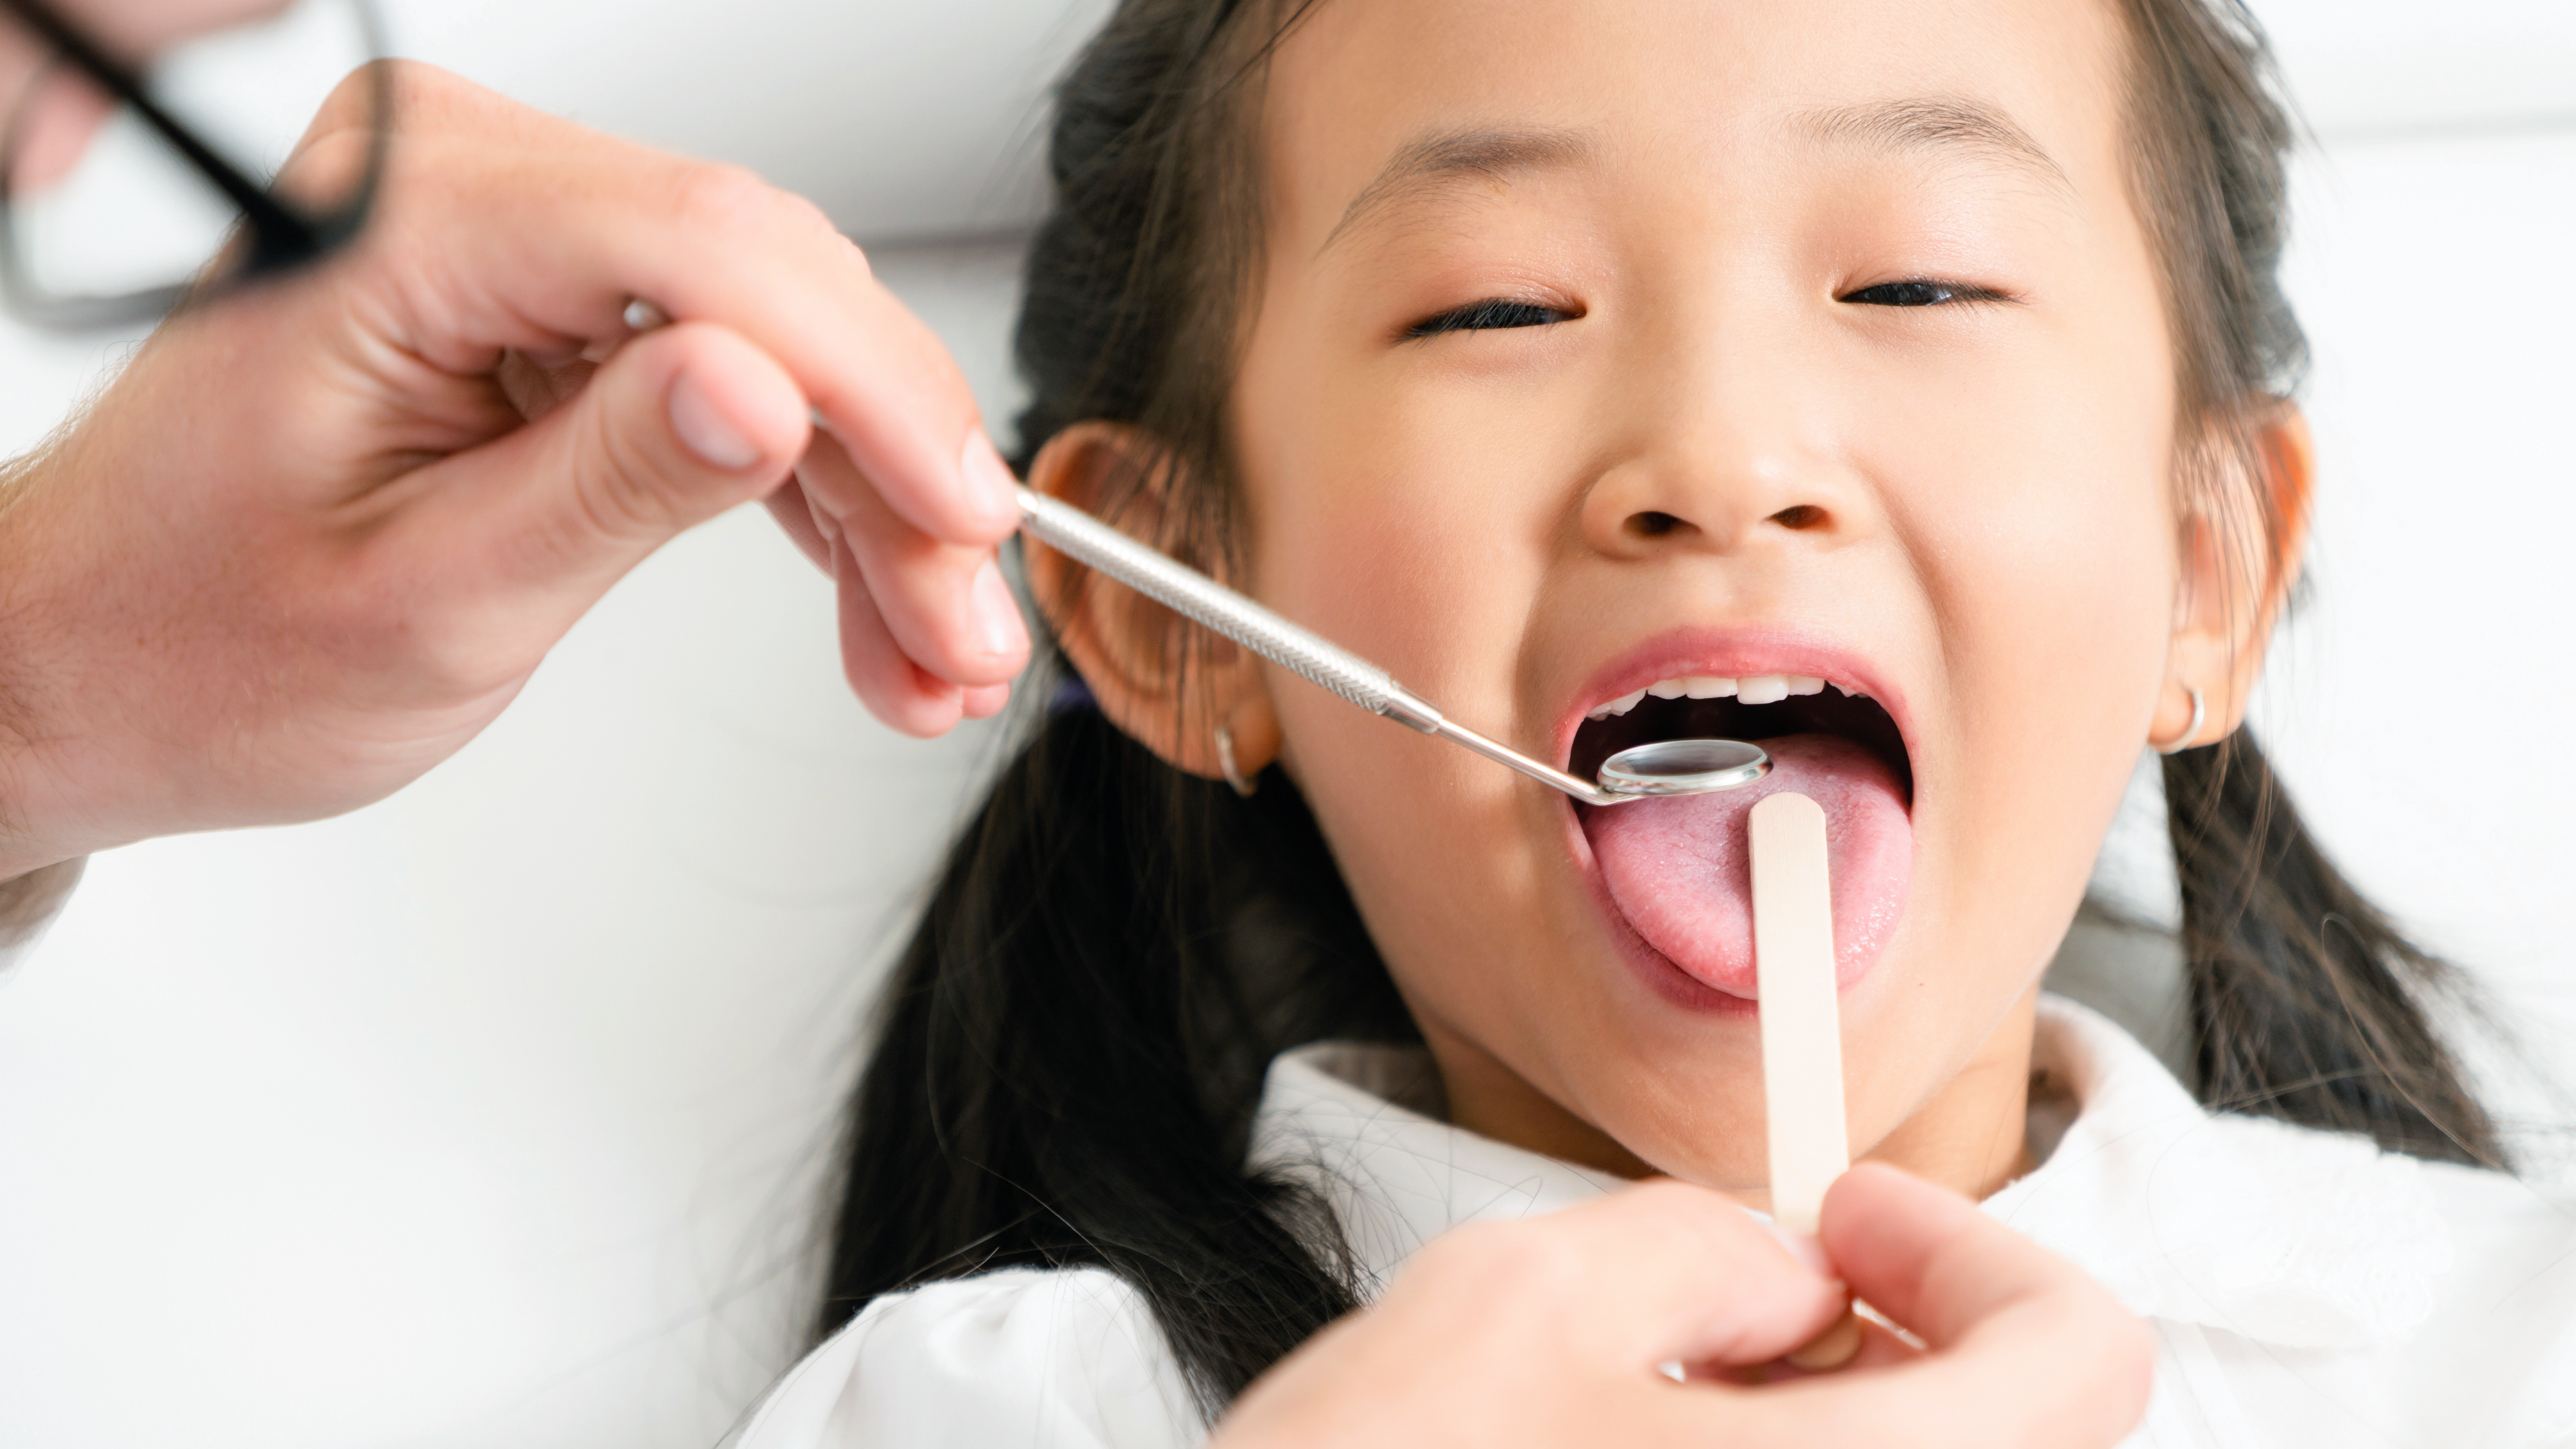 Bác sĩ khám răng sữa hàm trên cho em bé để đưa ra giải pháp bọc mão răng phù hợp